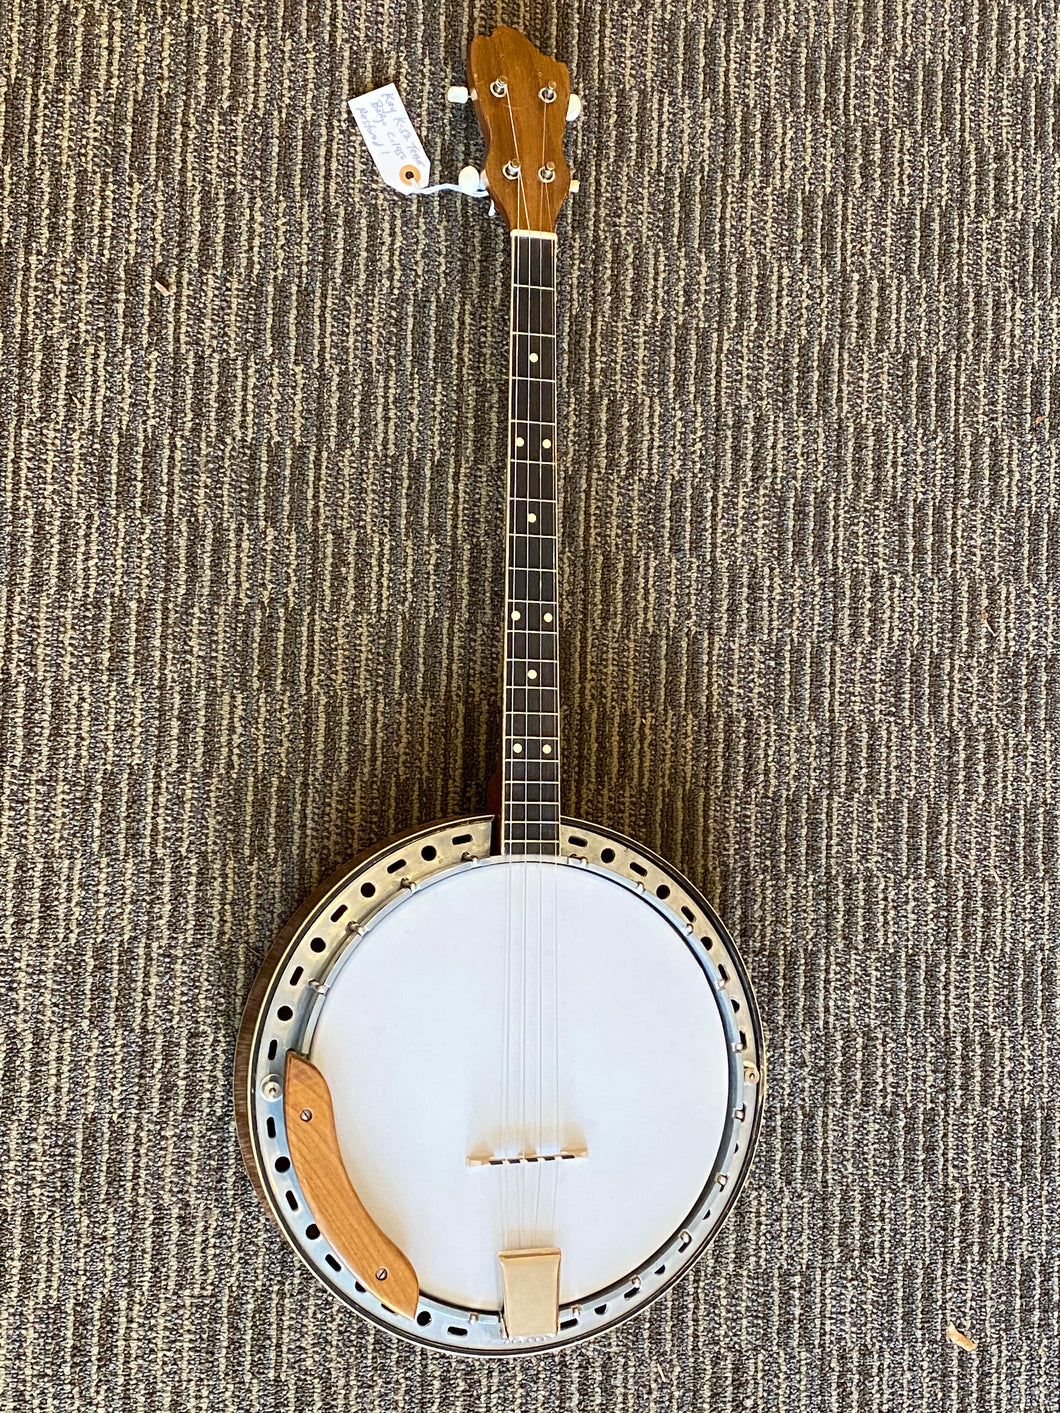 Kay K-52 Tenor Banjo c. 1950